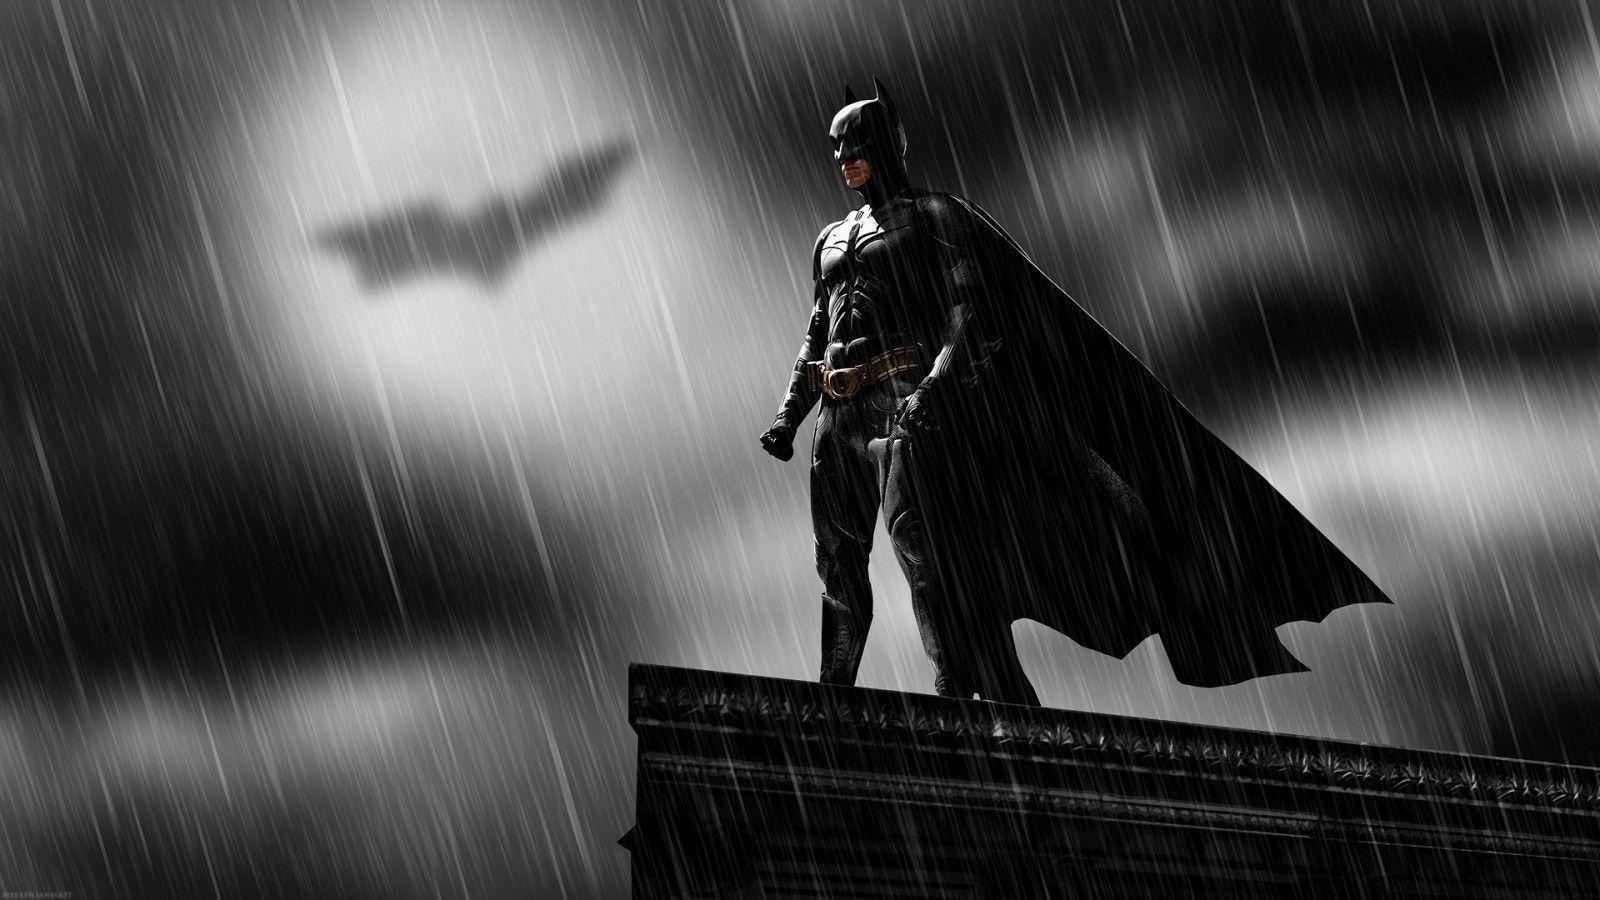 Dark Knight HD Wallpaper. Dark Knight Desktop Image. Cool